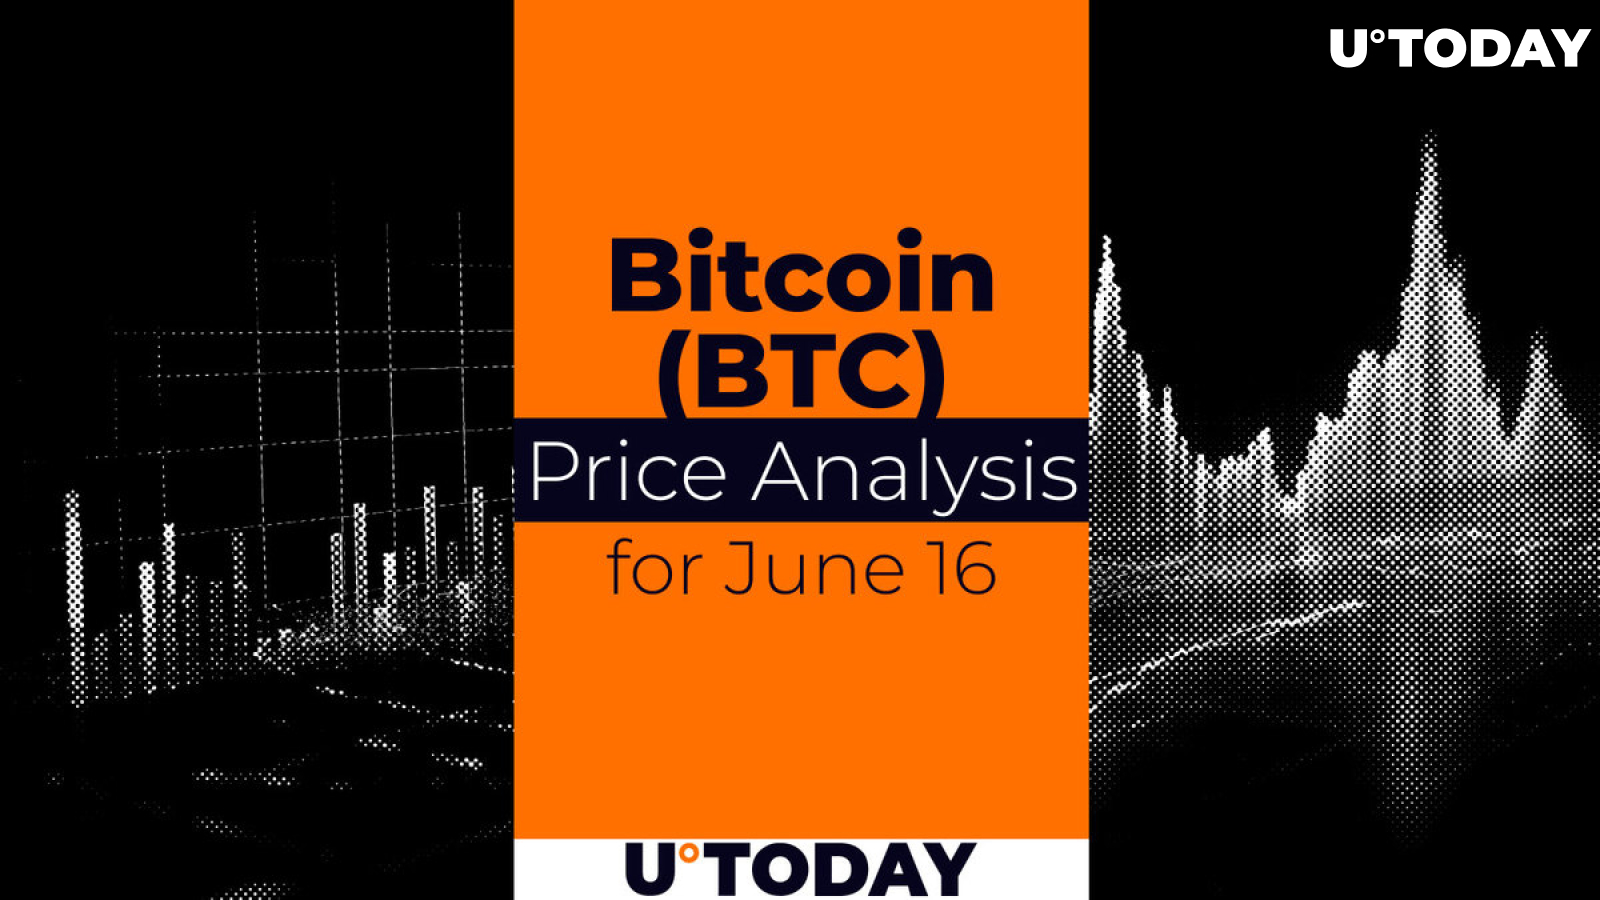 Bitcoin (BTC) Price Prediction for June 16